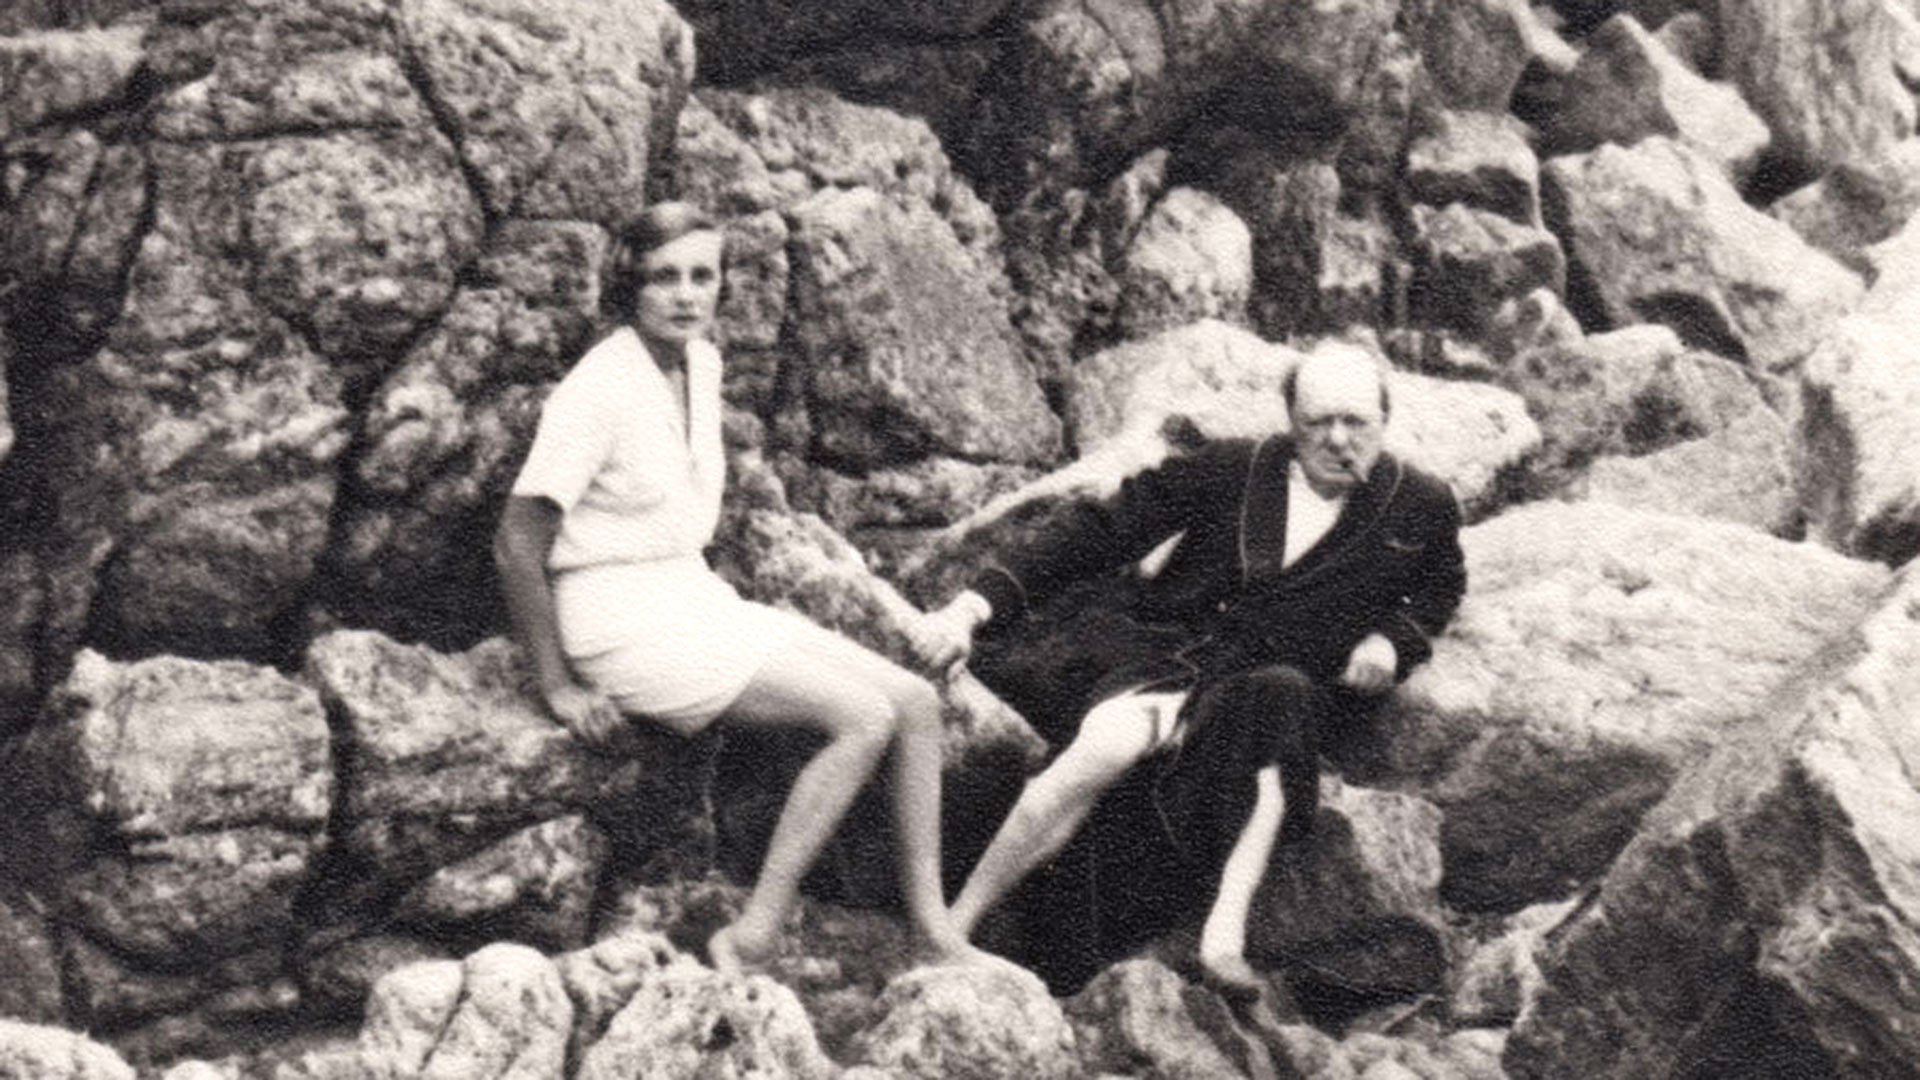 Doris Castleross y Winston Churchill, en una playa cercana al Chateau de L'Horizon, a medidos de los años 30